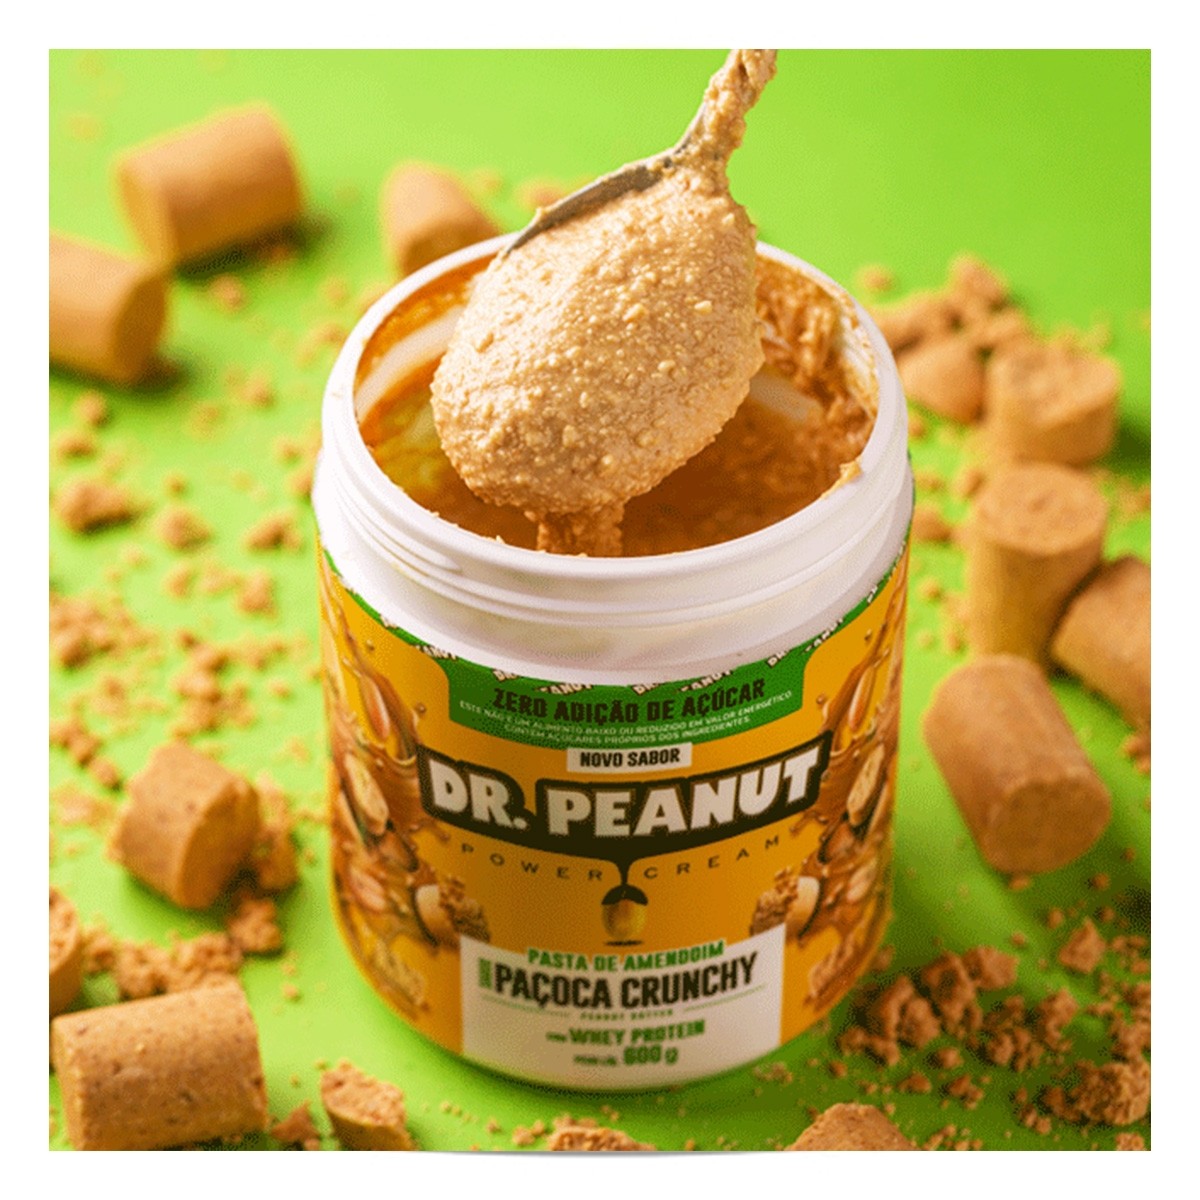 Pasta de Amendoim (600g) Dr. Peanut